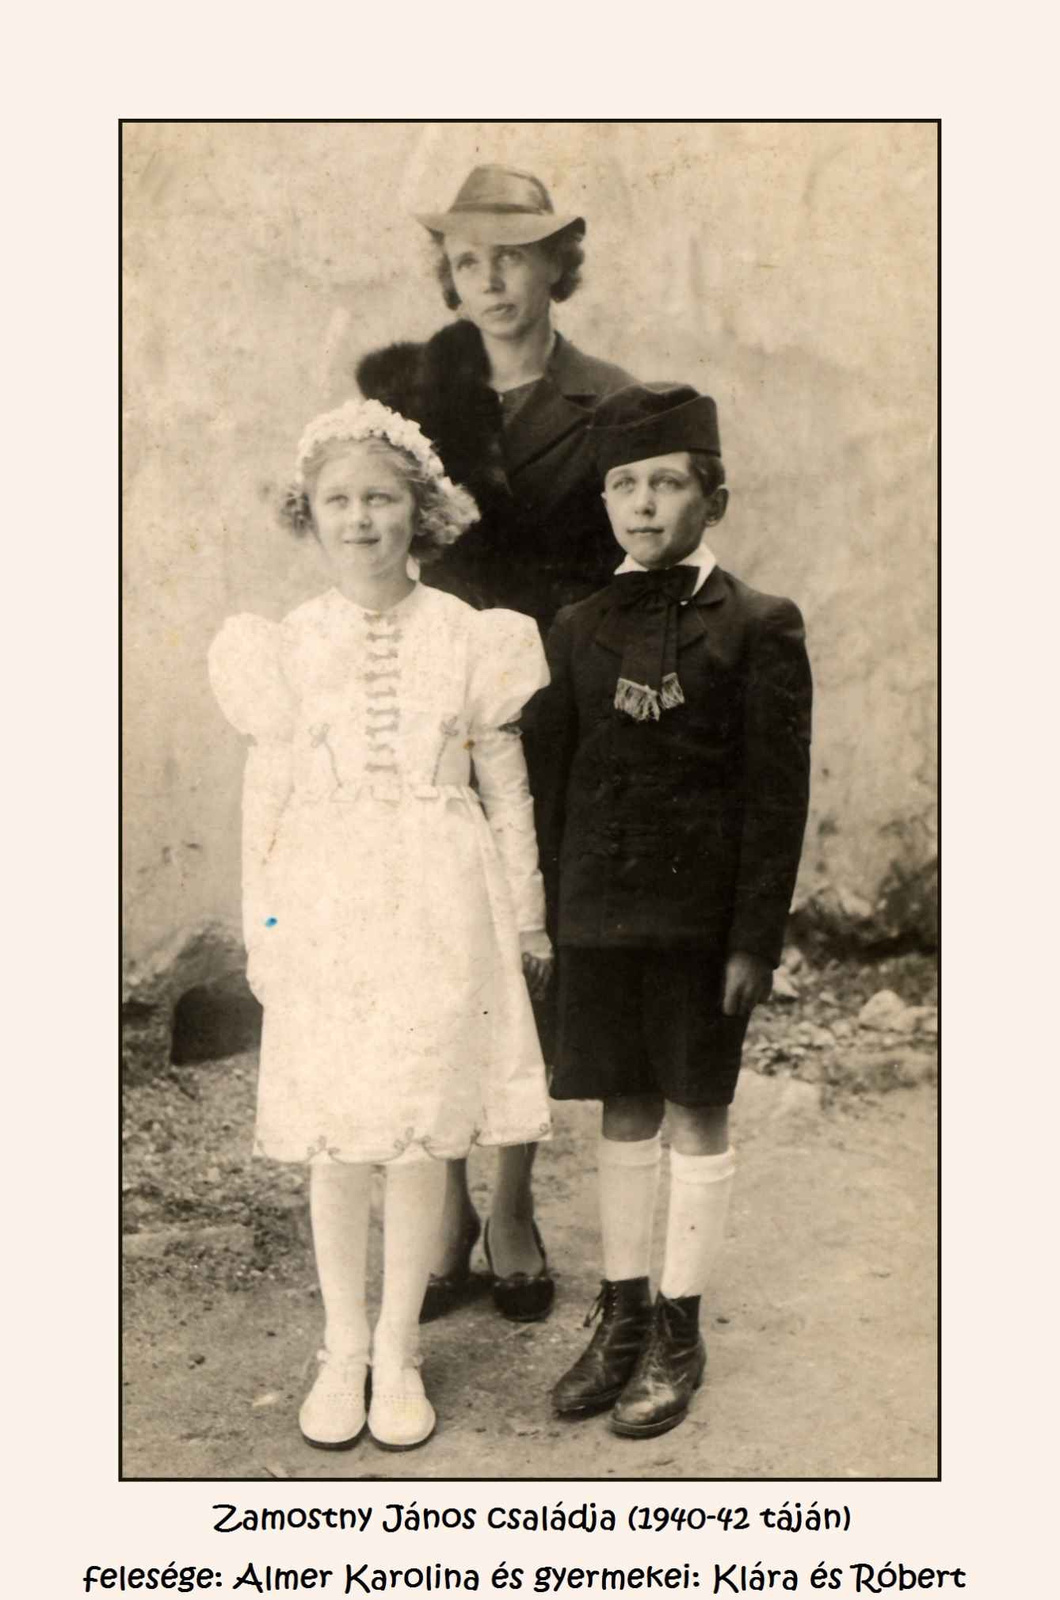 952. Zamostny János családja 1941-42 táján